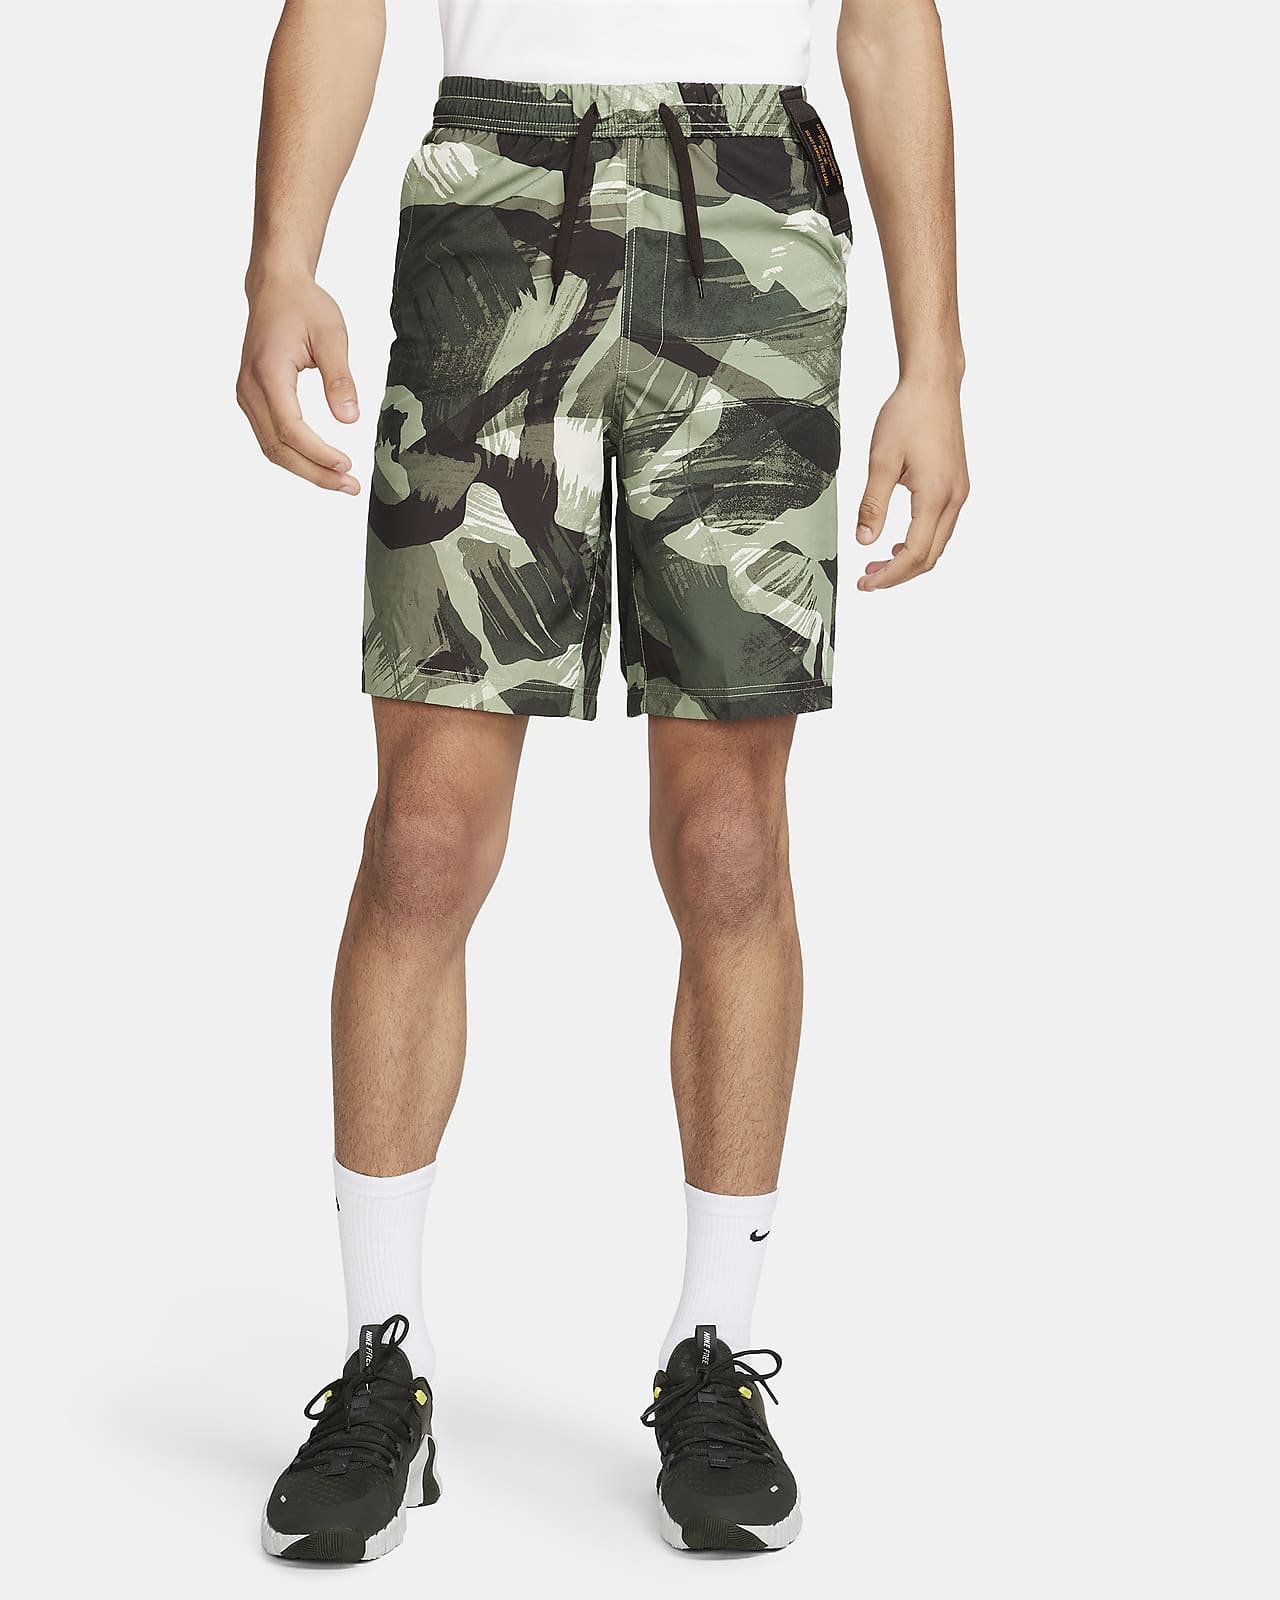 Alsidige Nike Form Dri-FIT-shorts (23 cm) uden for til mænd